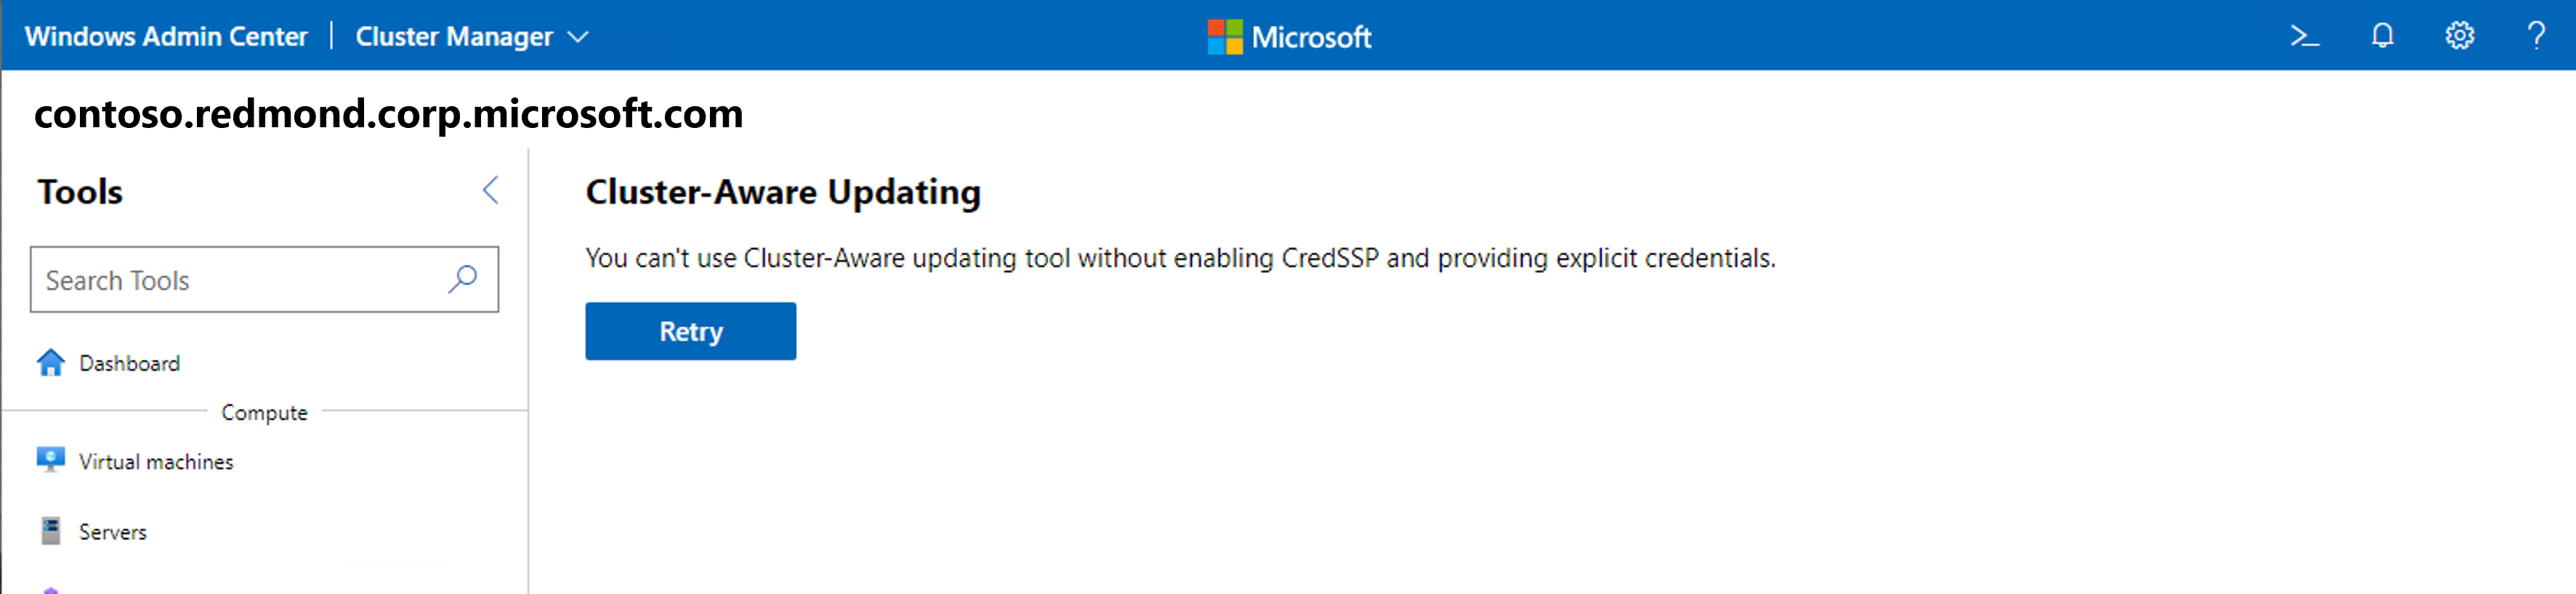 Captura de pantalla de la herramienta Actualizaciones mediante la actualización compatible con clústeres con el error Cred S S P en Windows Admin Center.